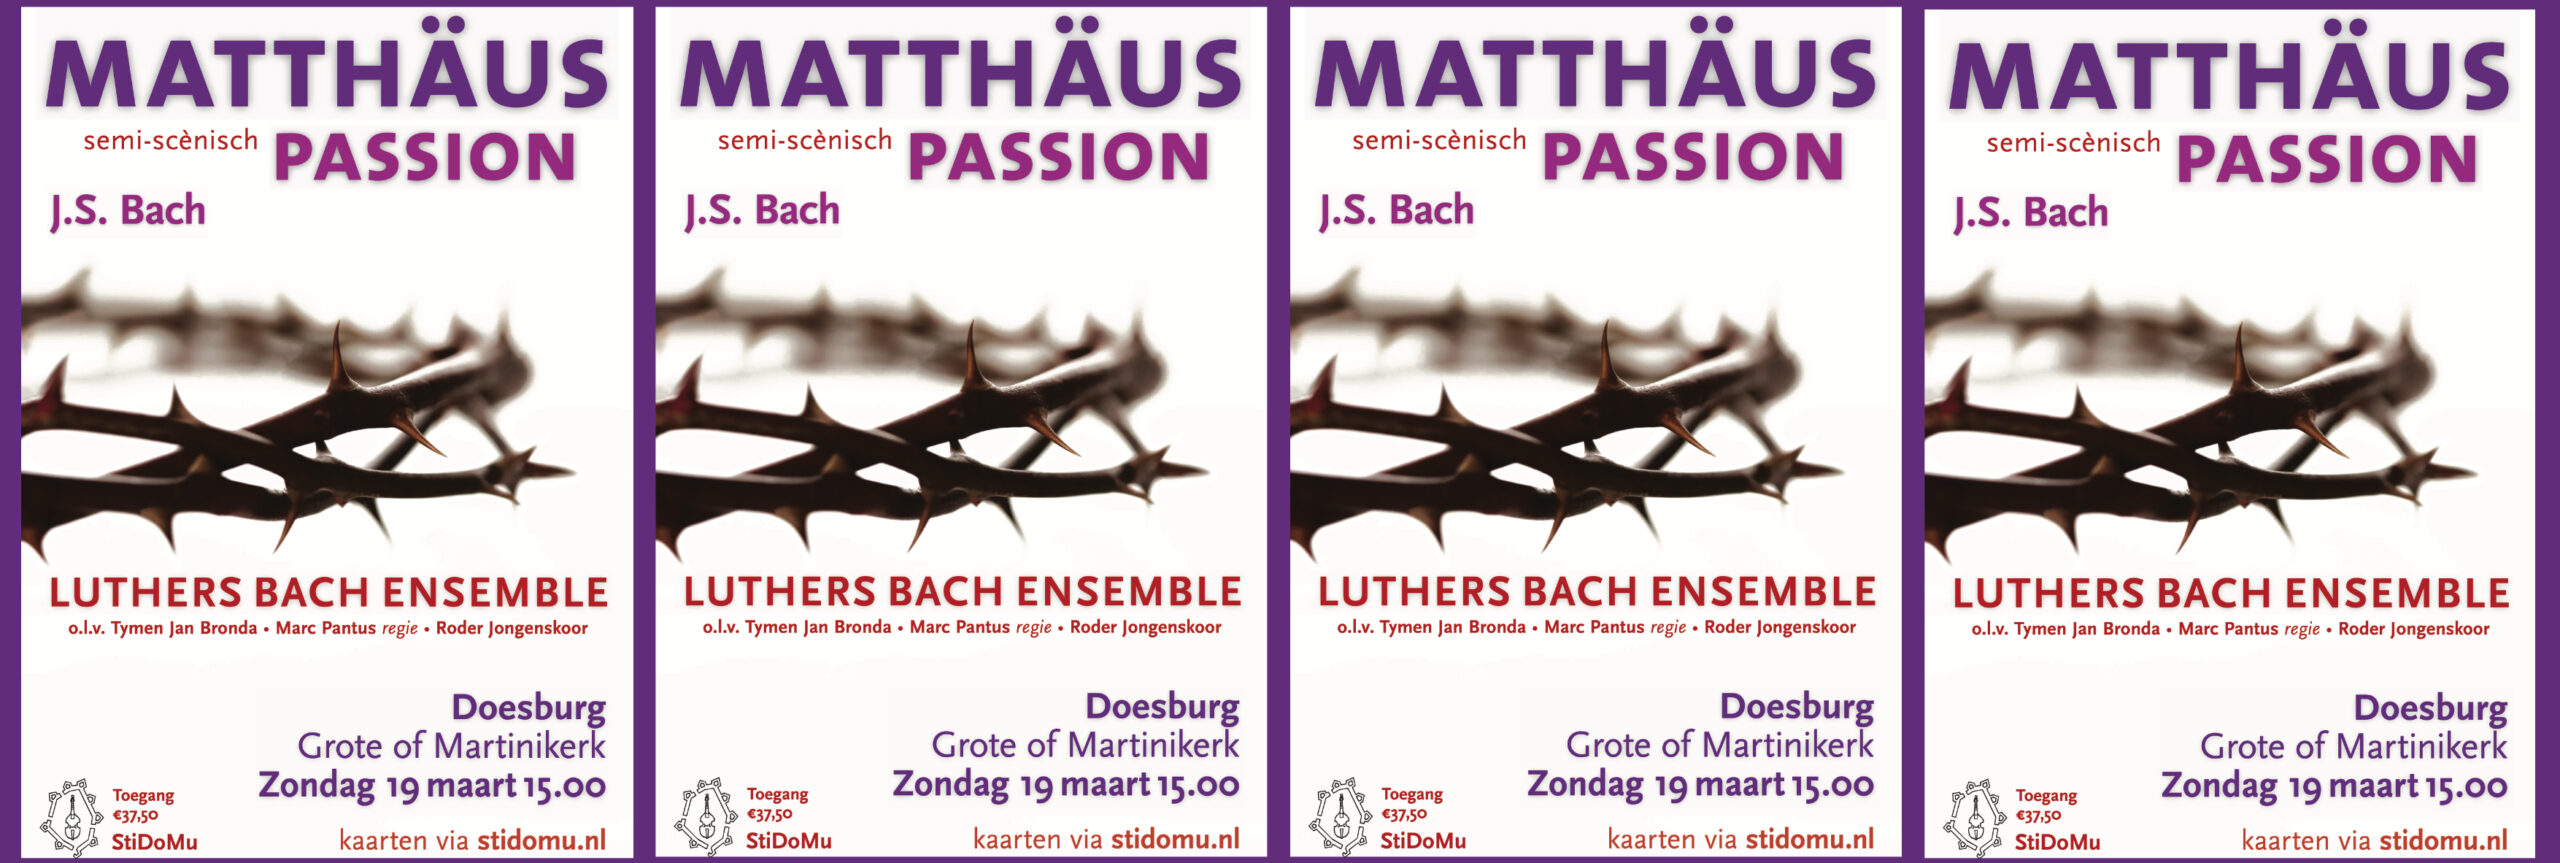  Frans Haagen speelt voor het concert van 14.00-14.45 op de beiaard delen uit de Matthäus Passion